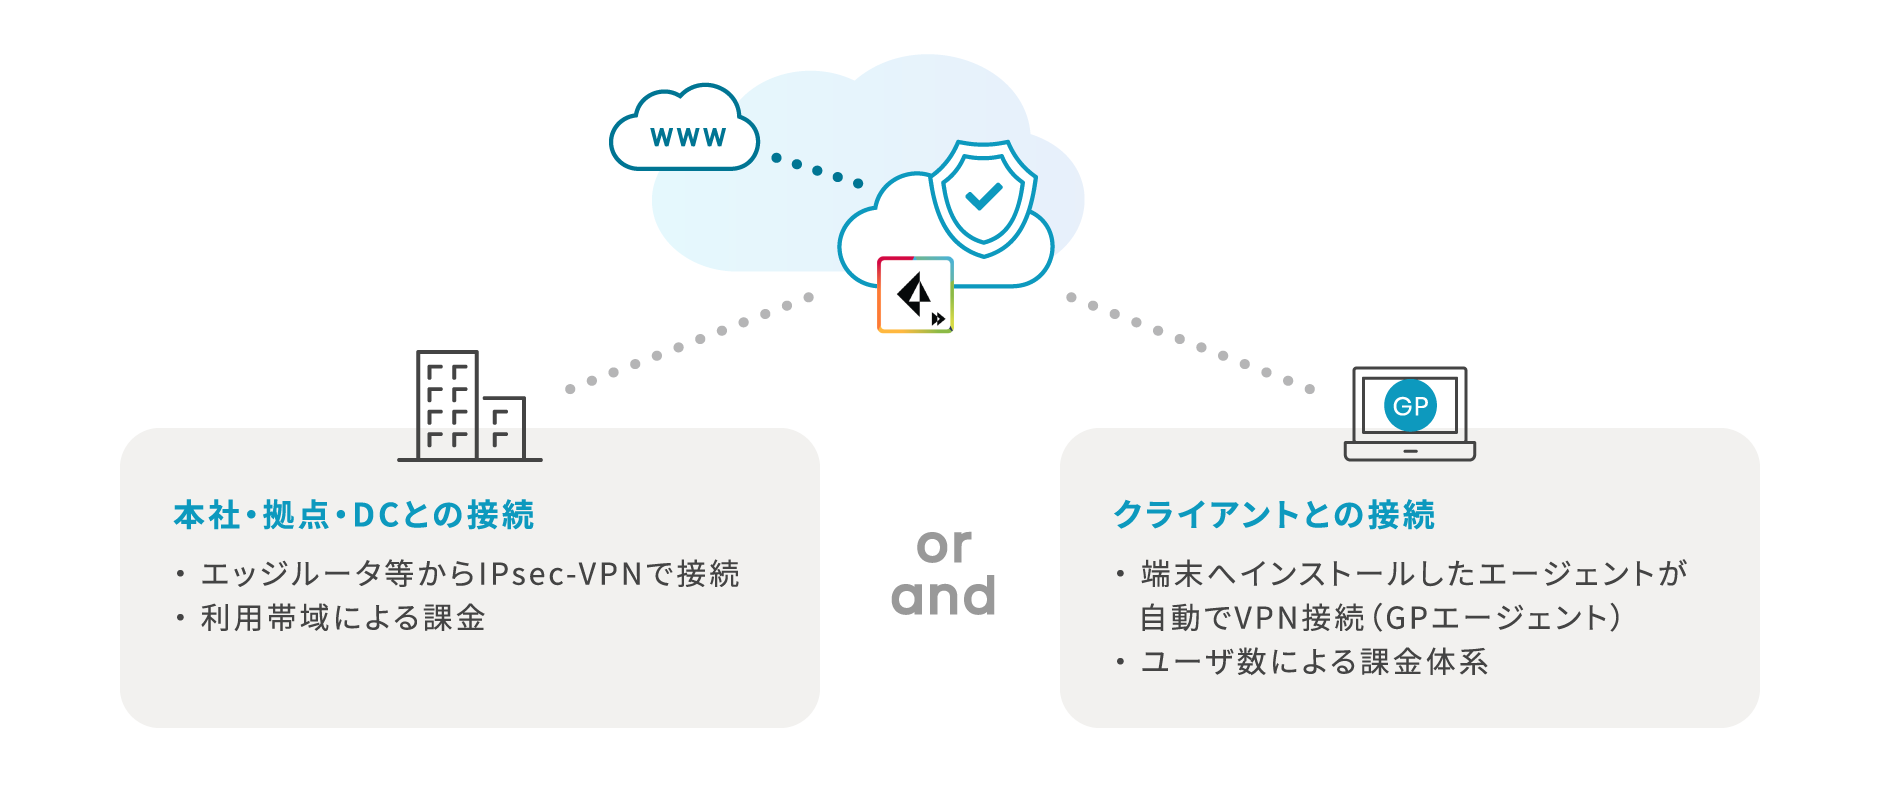 【本社・拠点・DCとの接続】・エッジルータ等からIPsec-VPNで接続　・利用帯域による課金　or/and　【クライアントとの接続】・端末へインストールしたエージェントが自動でVPN接続（GPエージェント）　・ユーザ数による課金体系